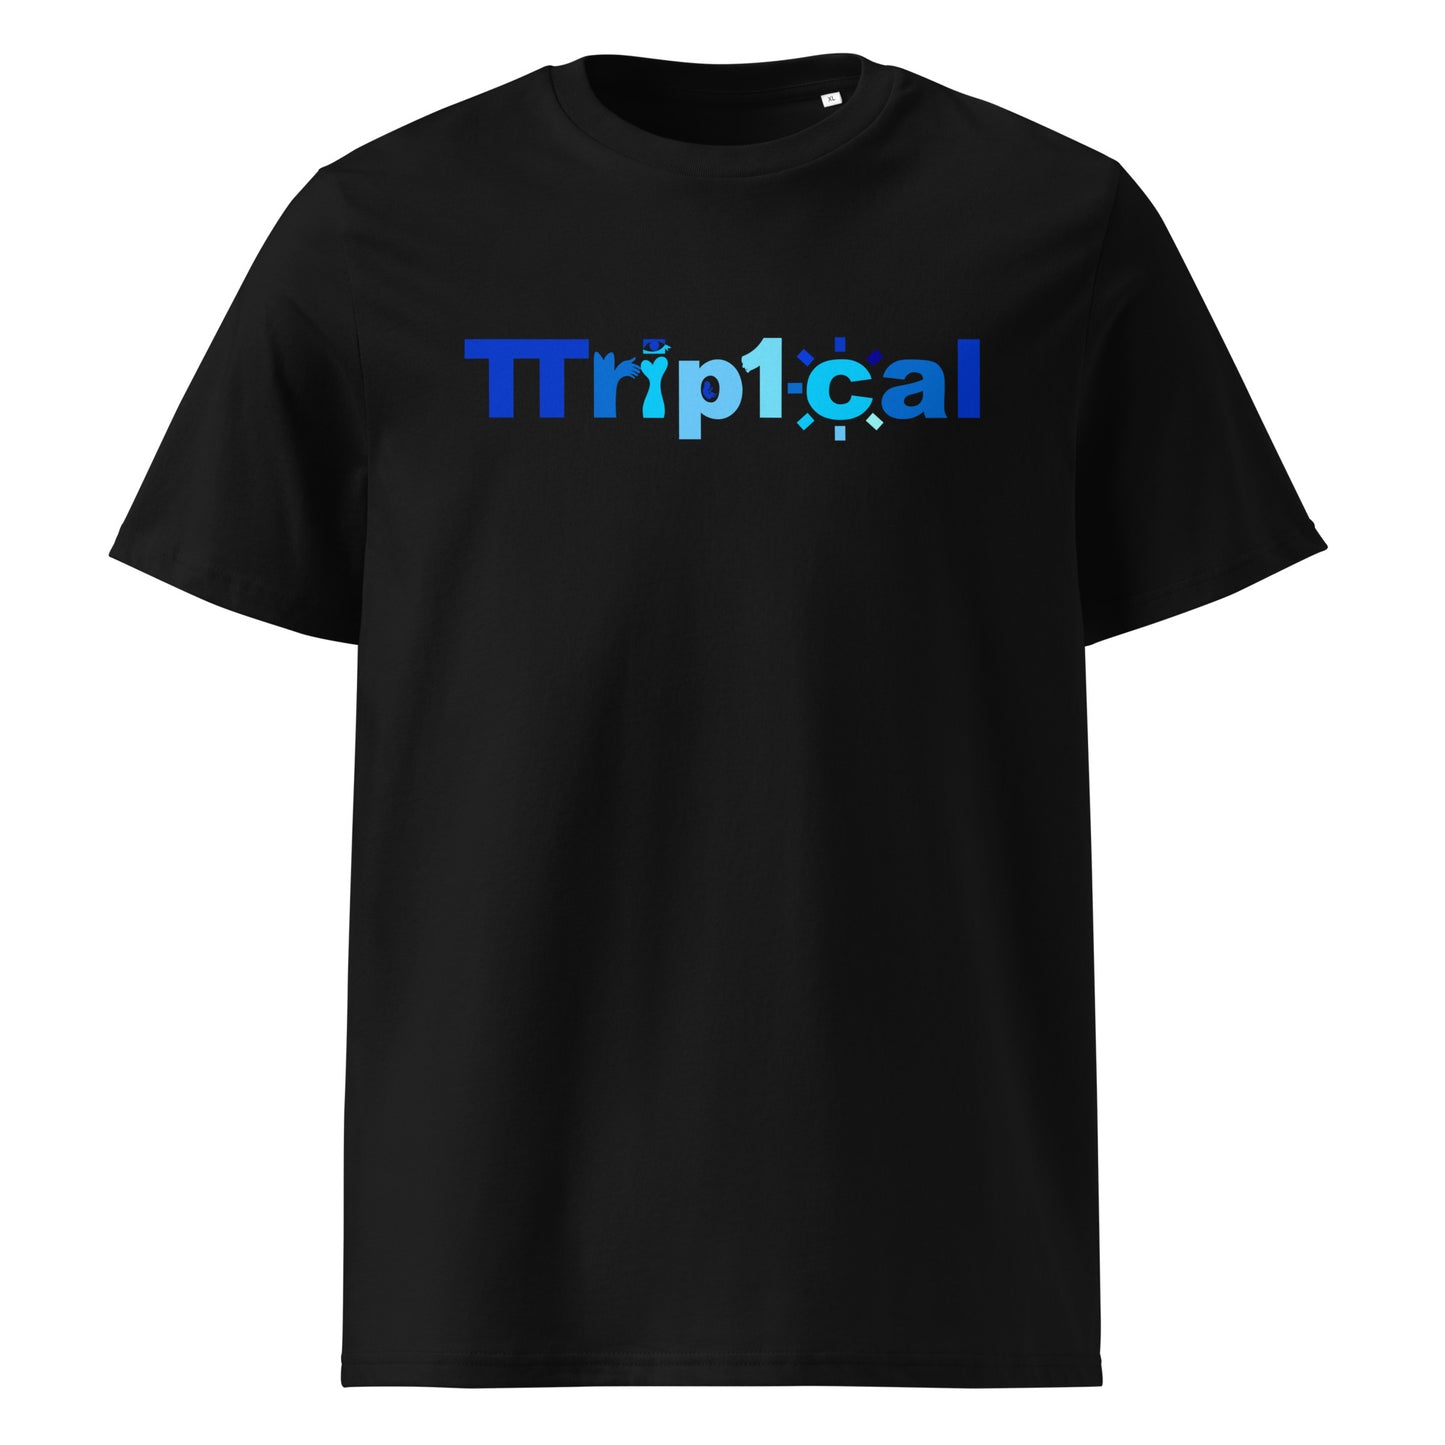 Tripical Takada Logo - The Blu3 Place [Gen 1]